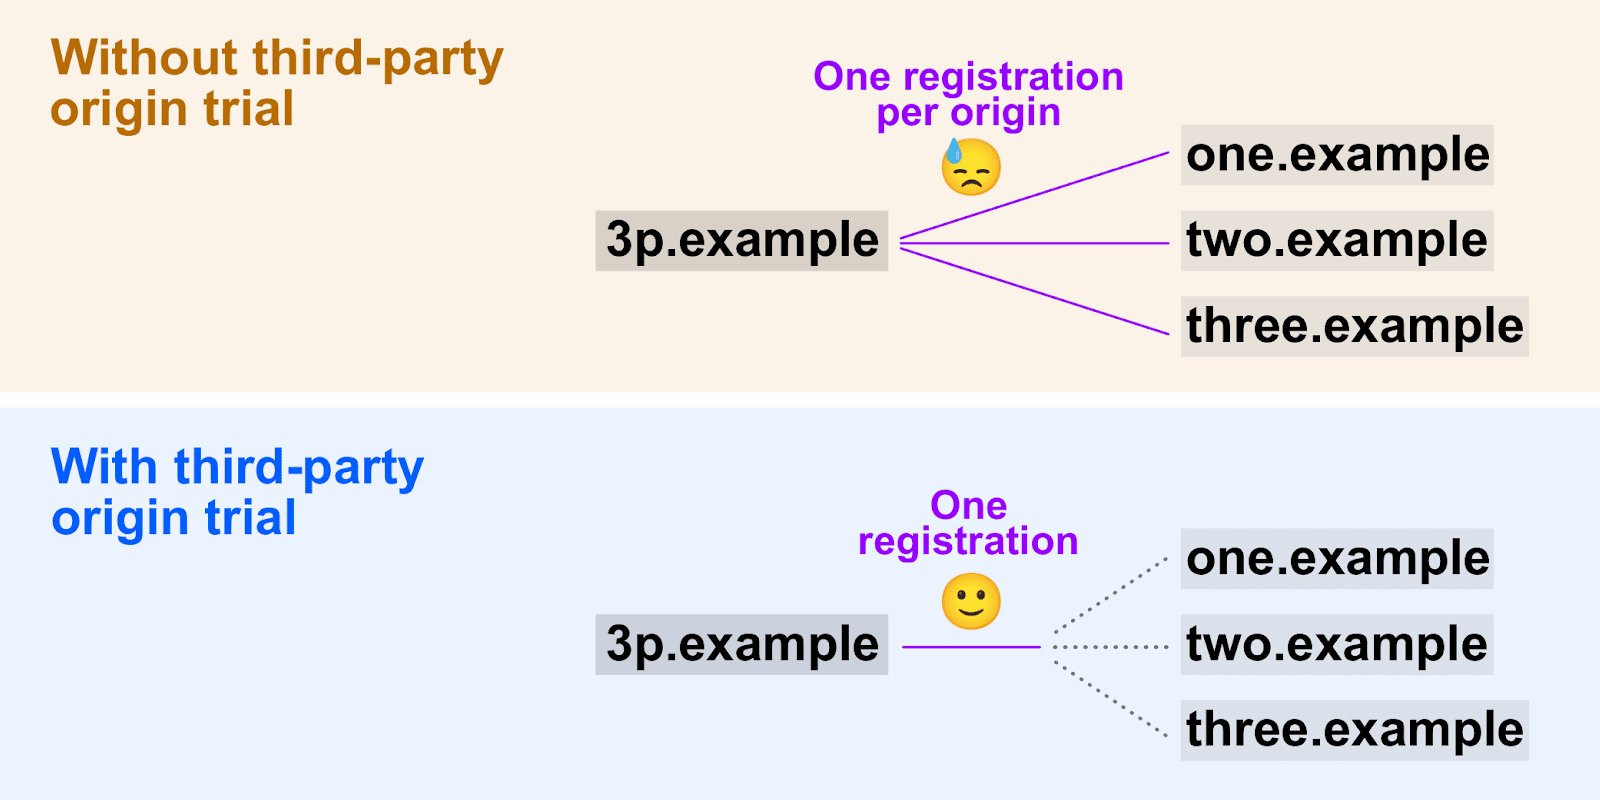 Diagram yang menunjukkan bagaimana
   uji coba origin pihak ketiga memungkinkan satu token pendaftaran digunakan di beberapa origin.